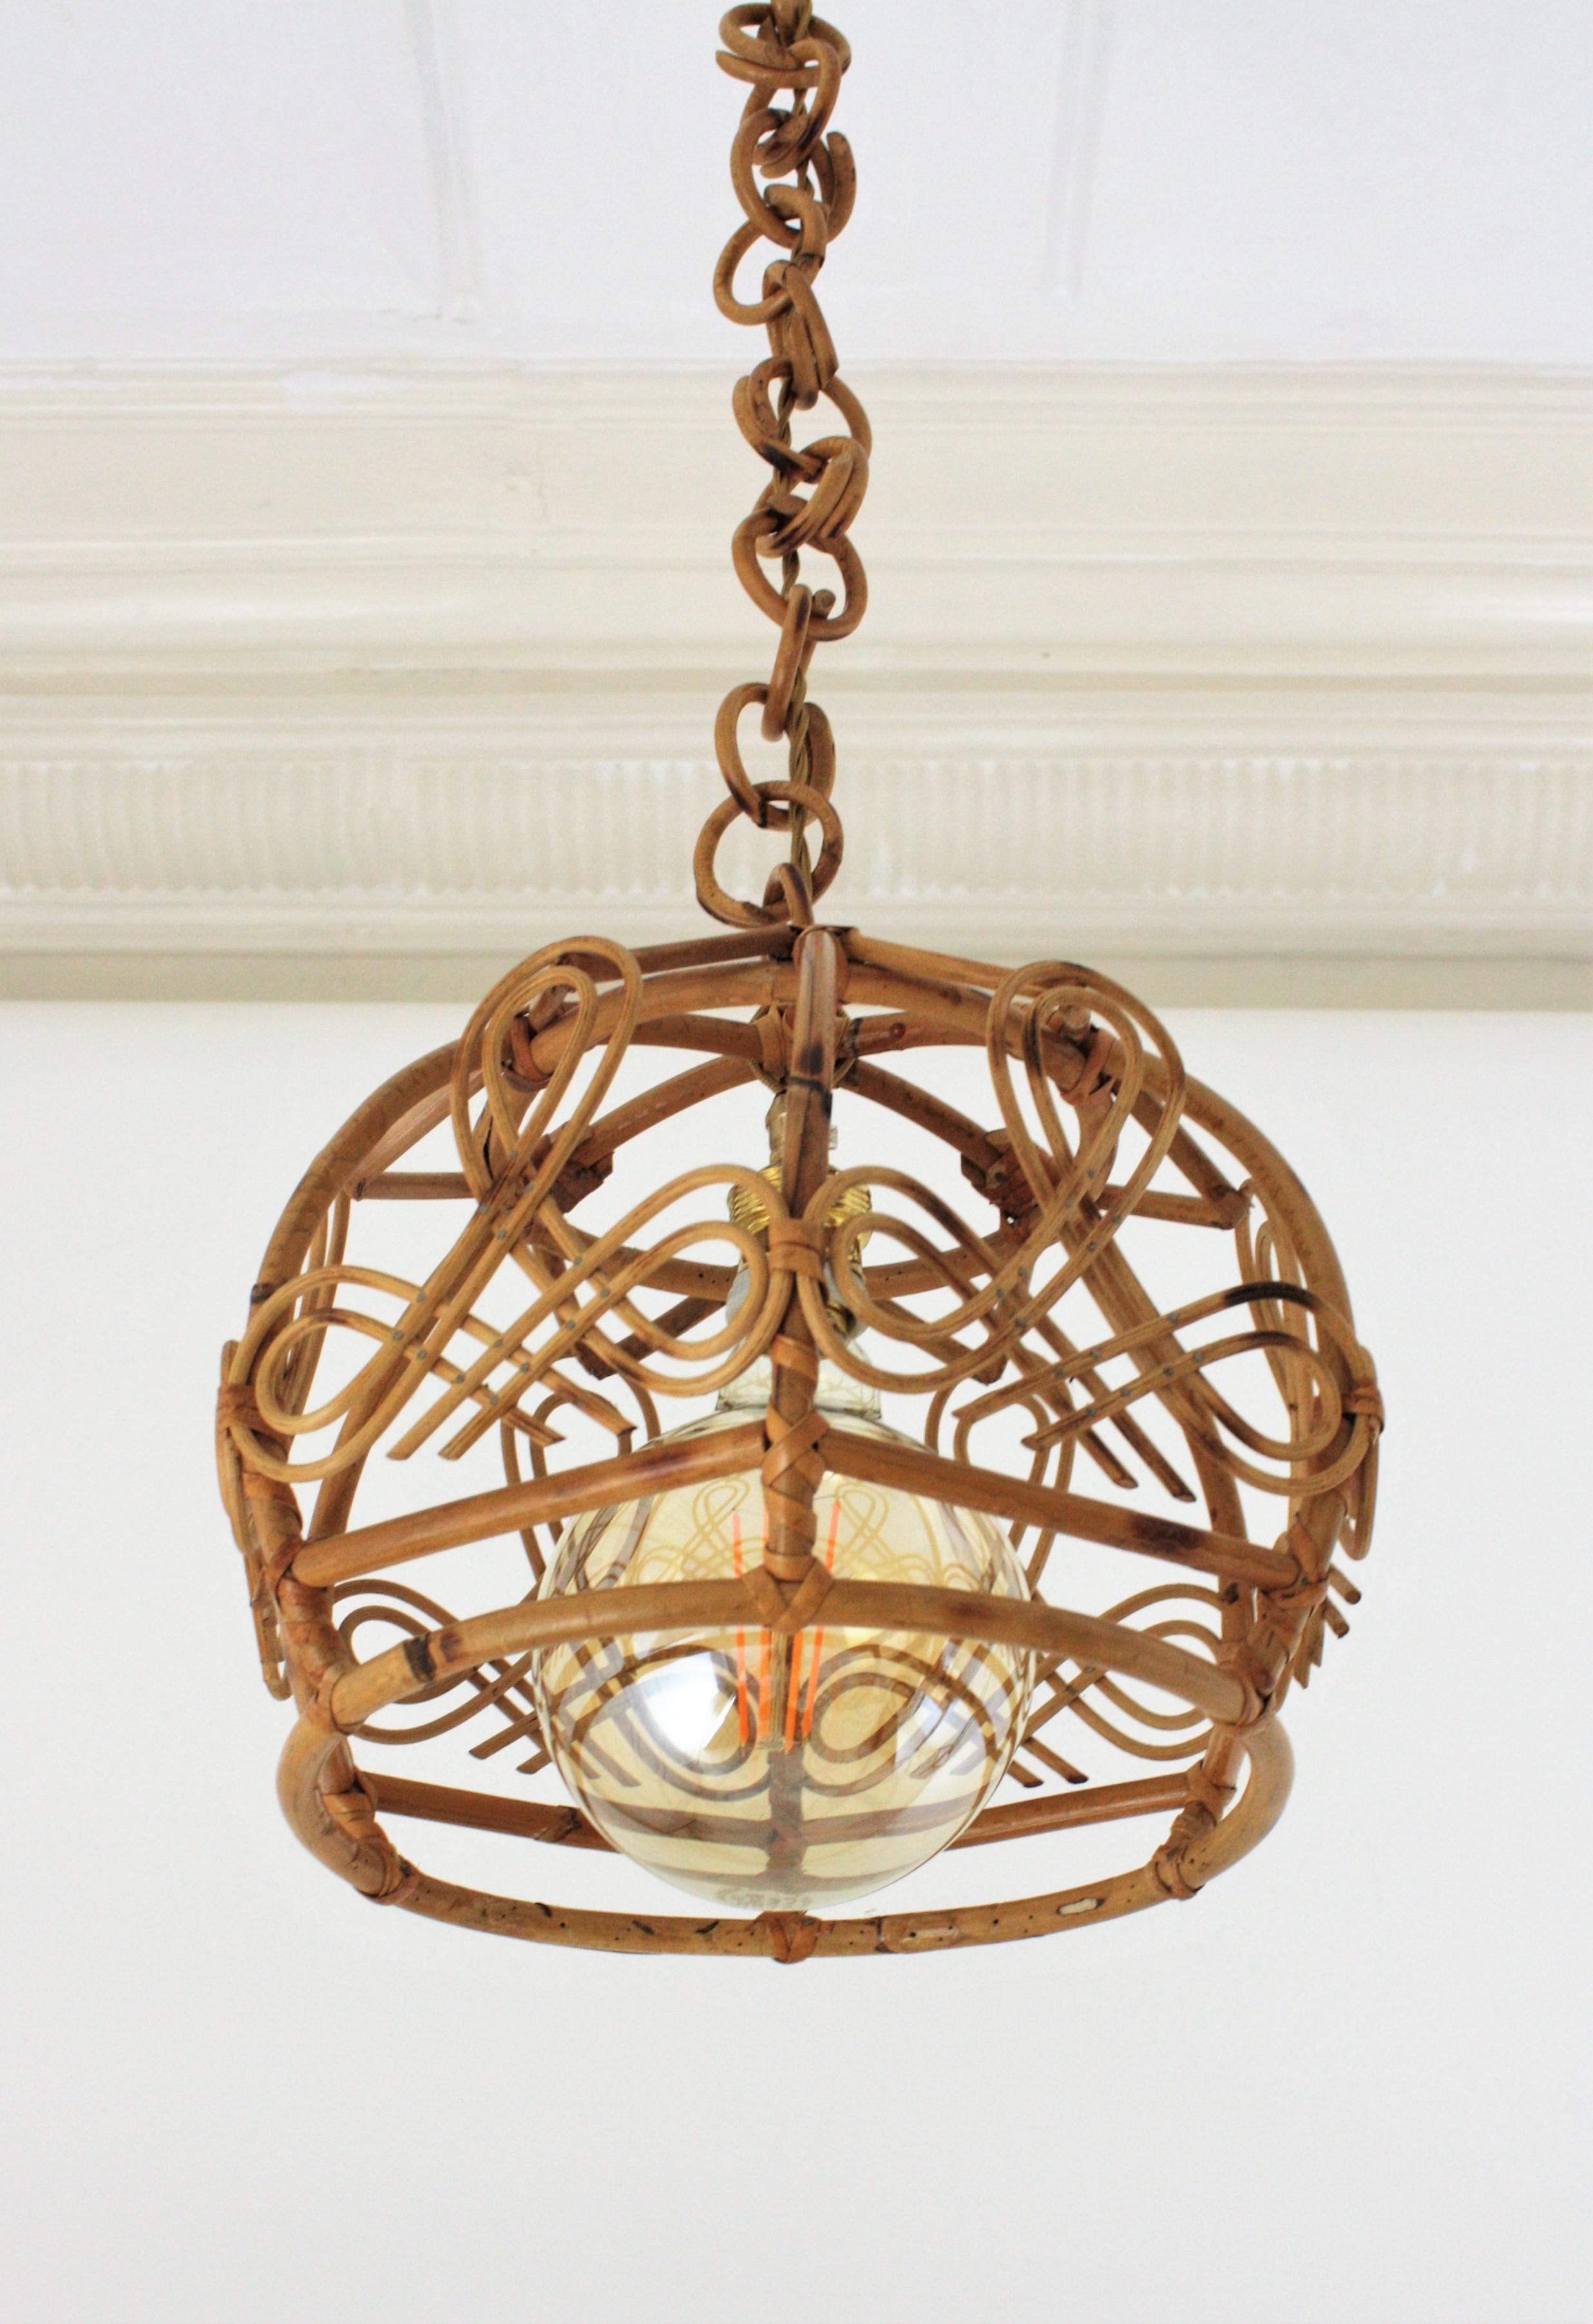 Suspension ou lanterne en forme de cloche en bambou et rotin, accentuée par des détails orientaux, France, années 1960.
Ce plafonnier artisanal présente un abat-jour en forme de cloche en bambou avec des décorations de chinoiserie, suspendu à une